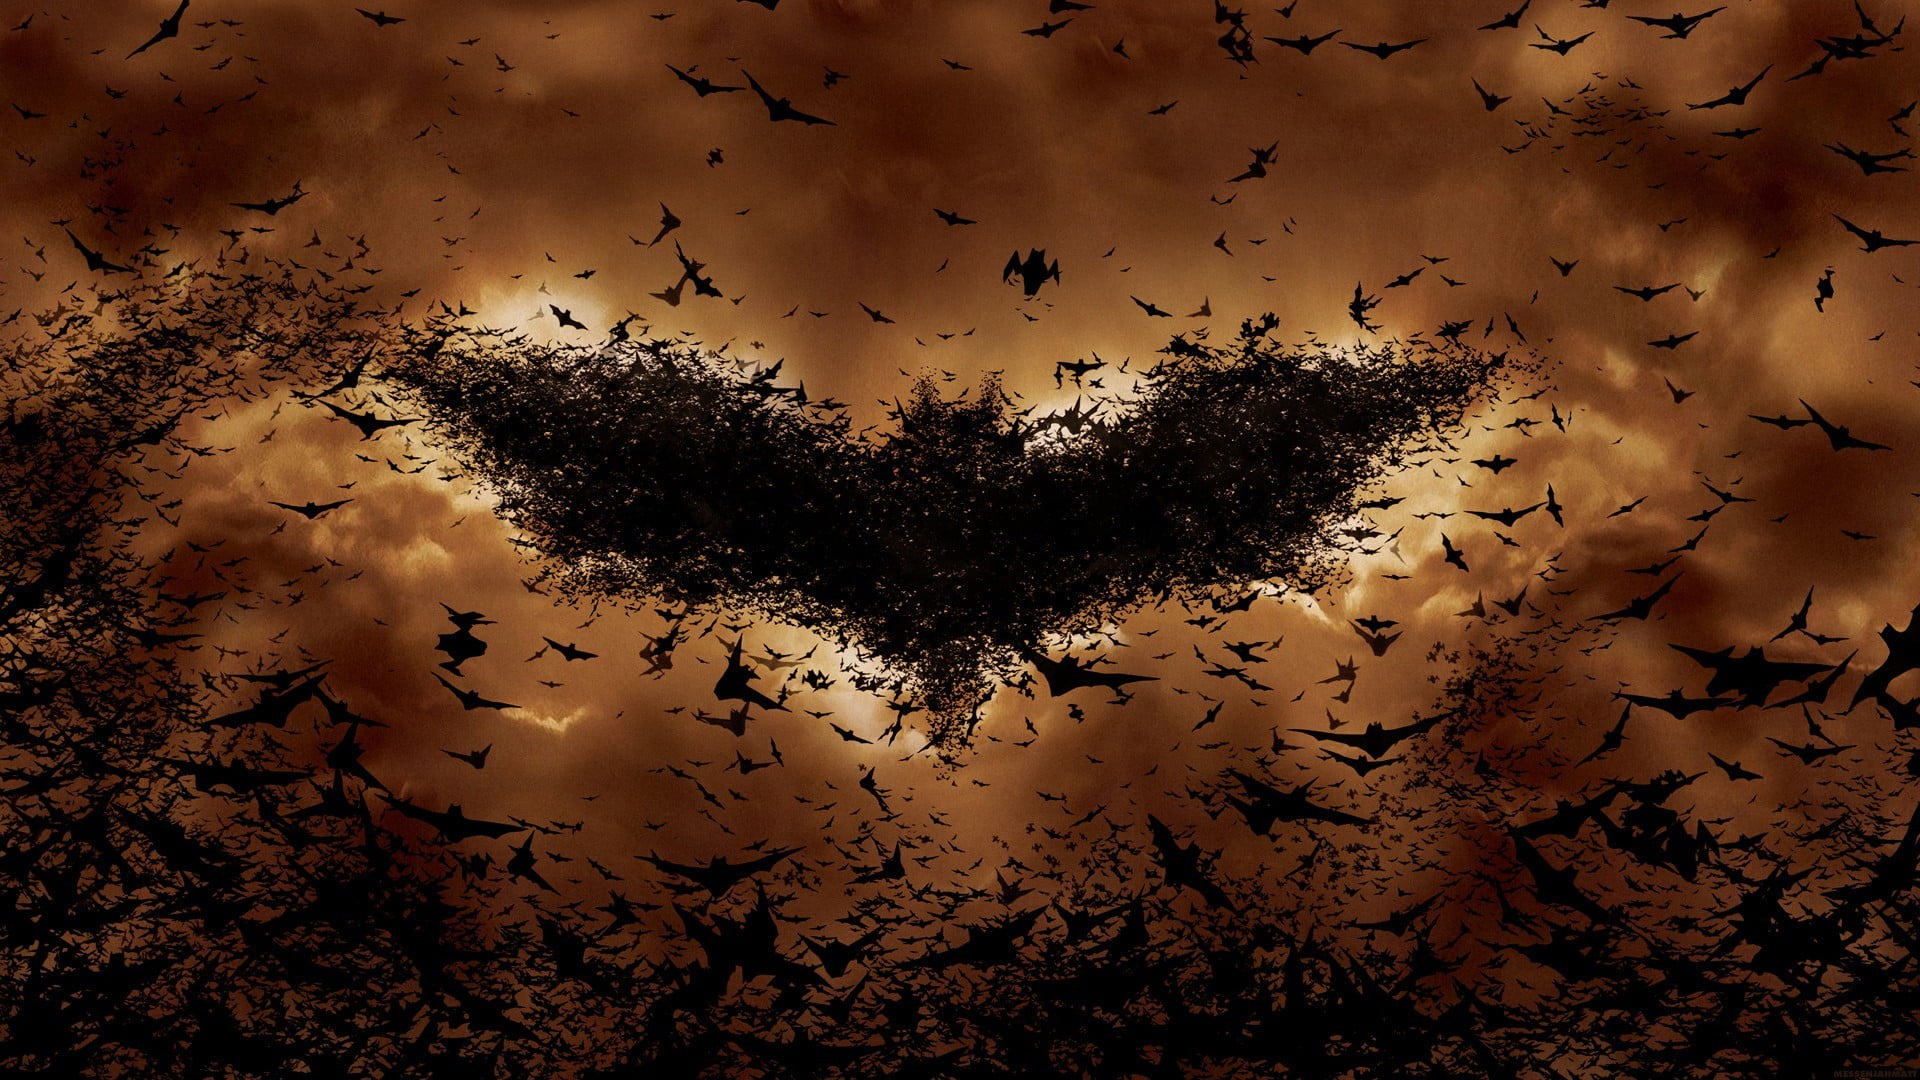 flock of bats creating Batman logo on sky digital wallpaper, Batman, bats, movies, Batman logo